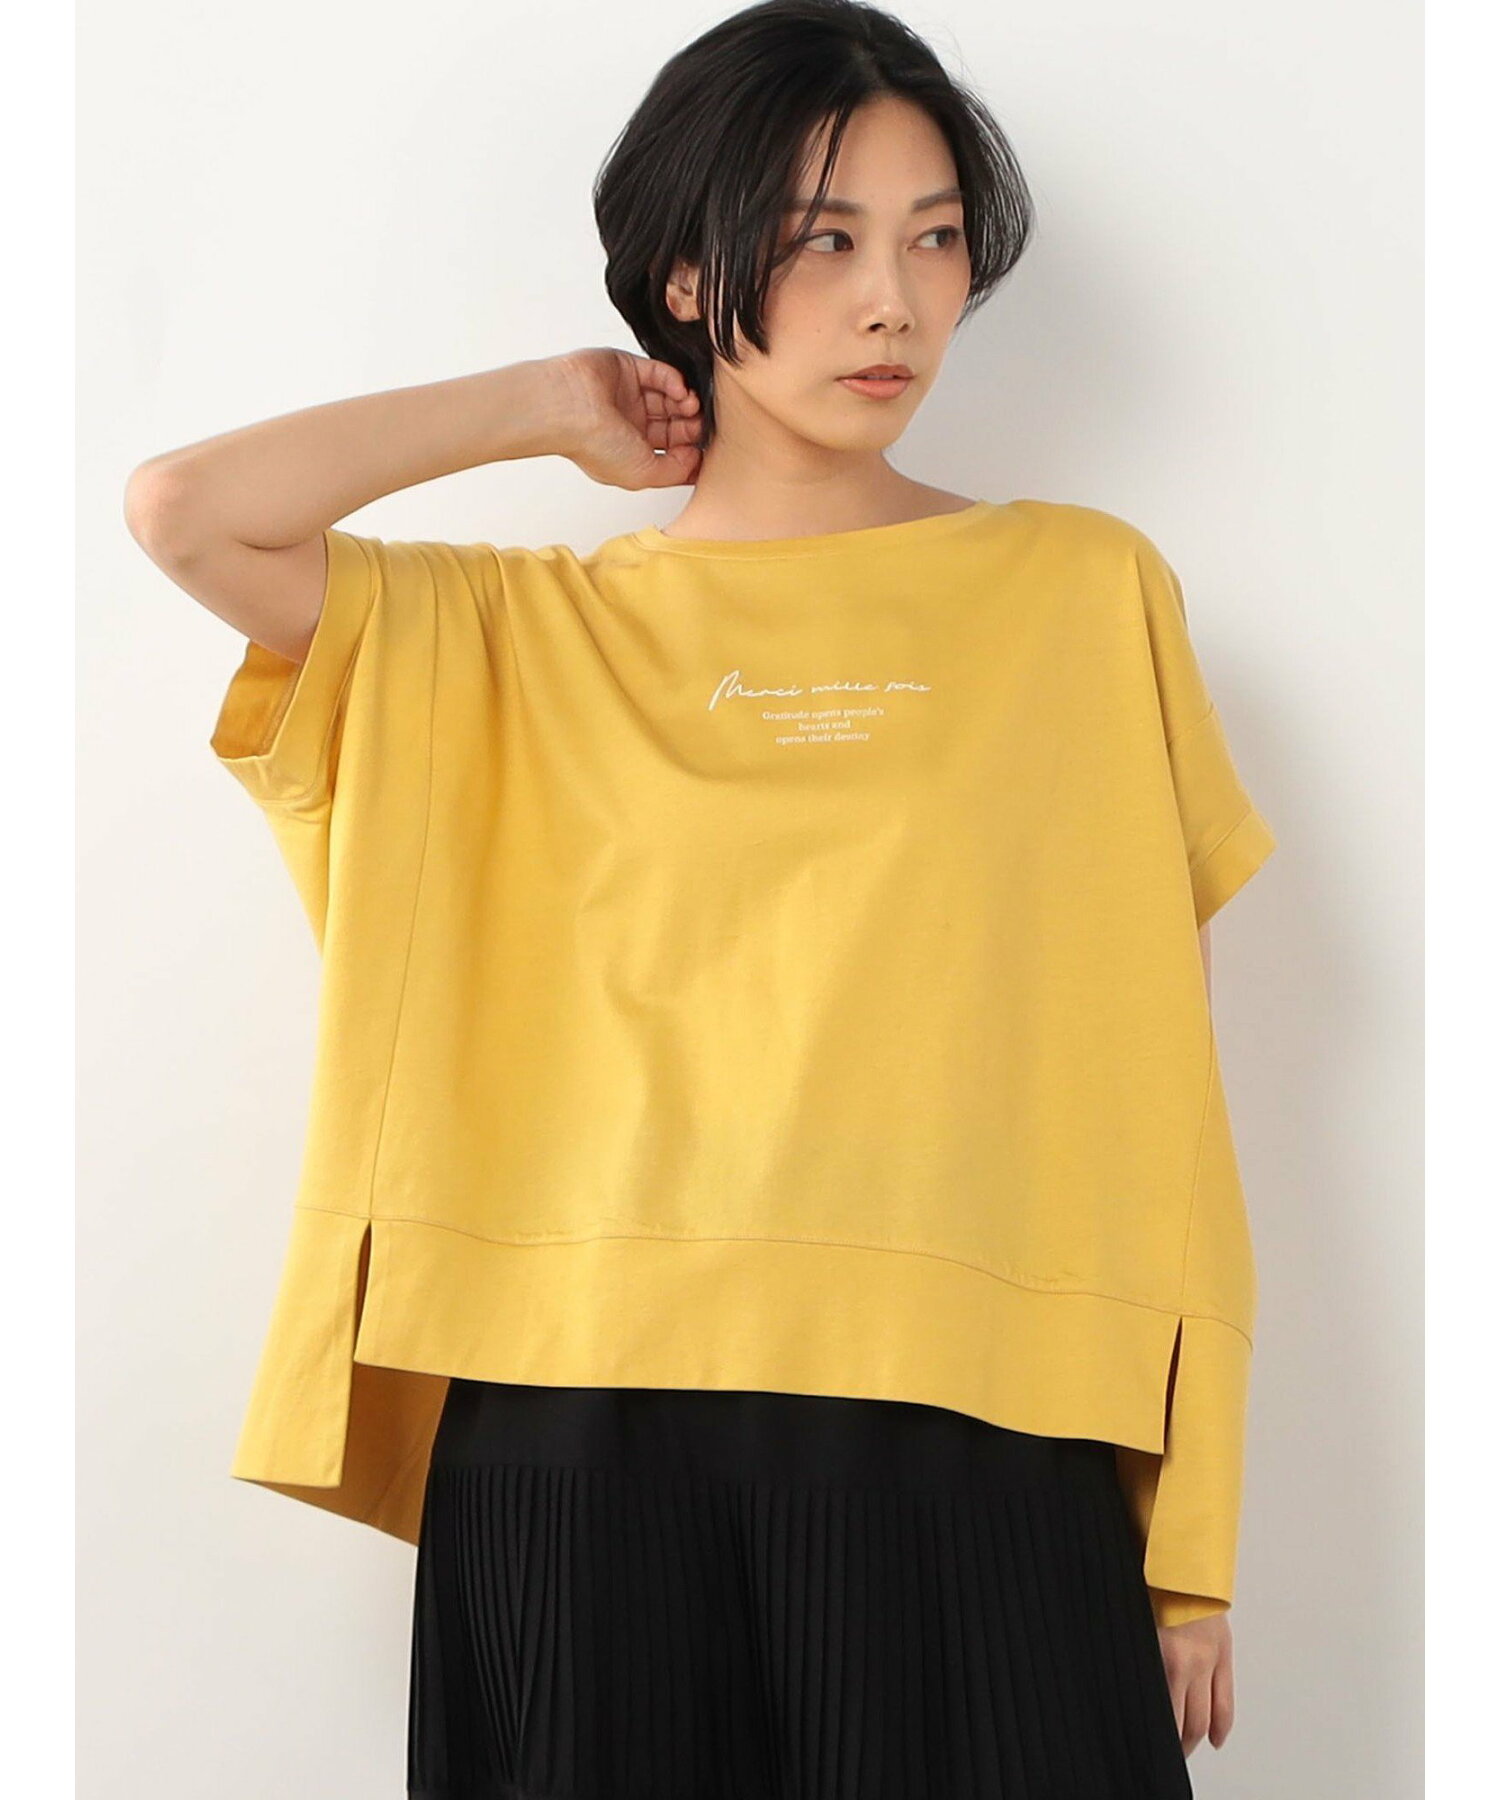 【WALDO】オーバーサイズ半袖Tシャツ